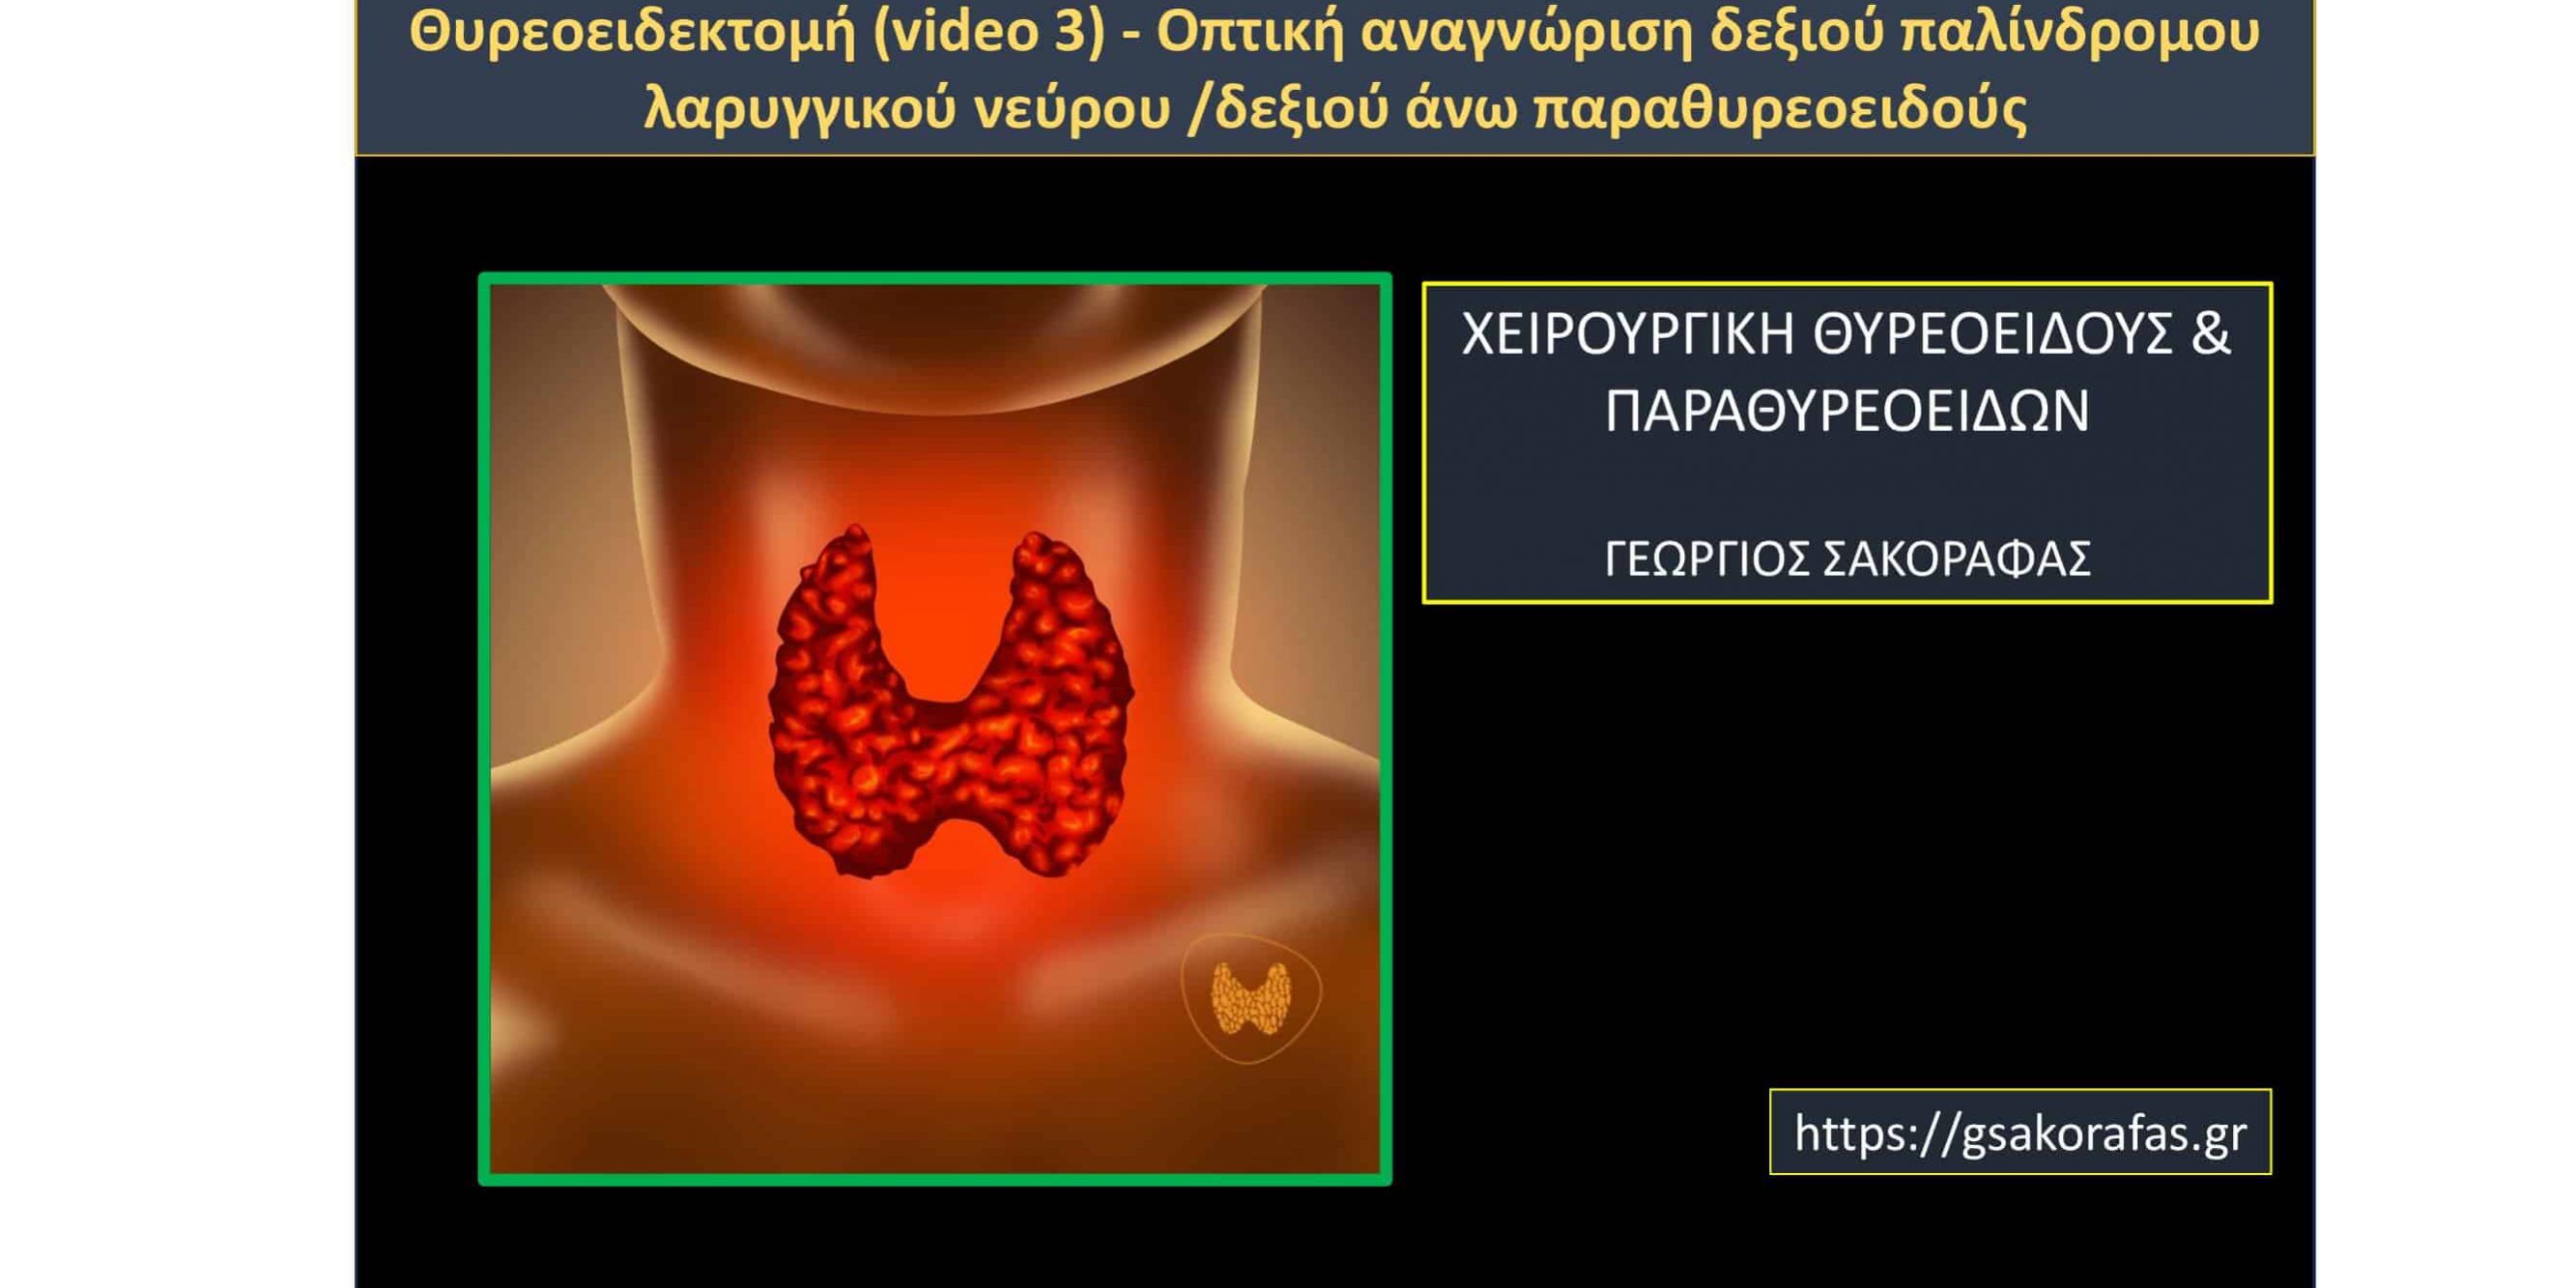 Θυρεοειδεκτομή (video 3) - Οπτική αναγνώριση δεξιού παλίνδρομου λαρυγγικού νεύρου /δεξιού άνω παραθυρεοειδούς